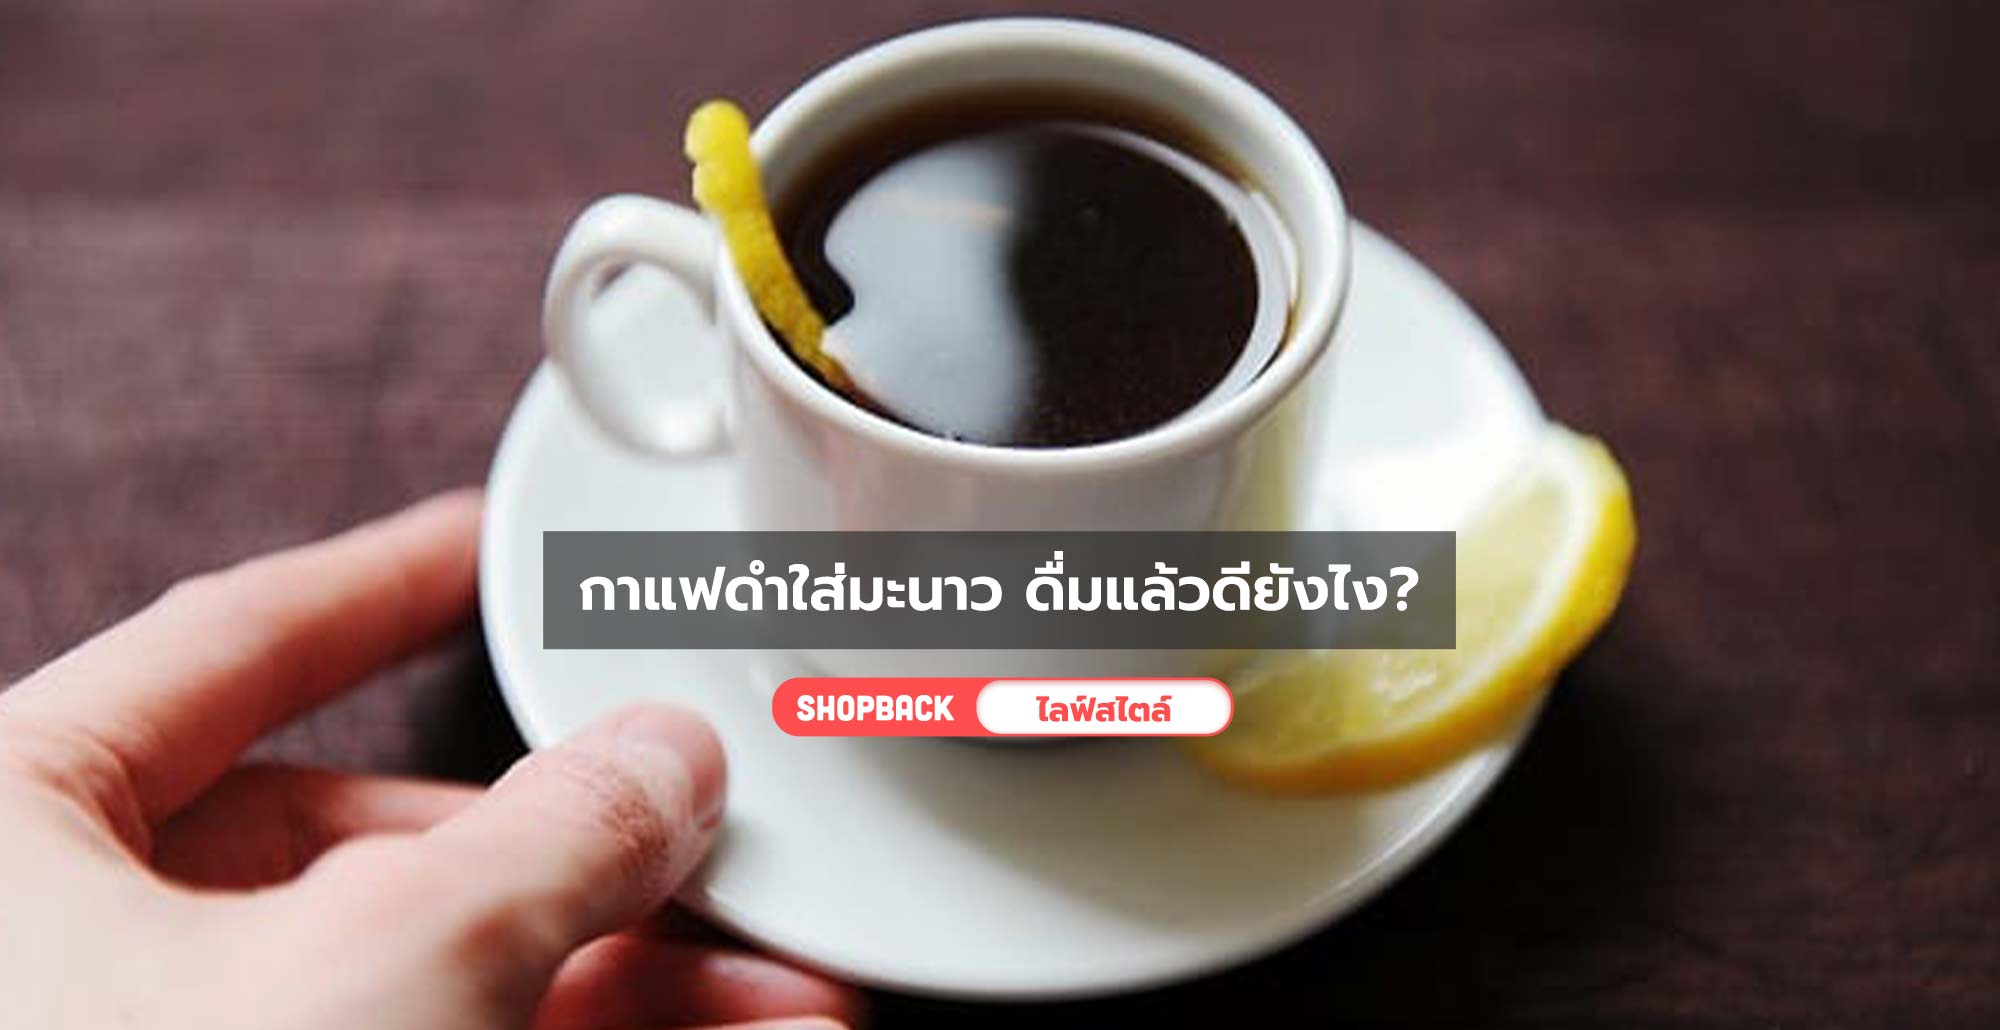 ประโยชน์ของกาแฟดำใส่มะนาว ดื่มแล้วดียังไง ช่วยแก้ไมเกรนได้จริงหรือ